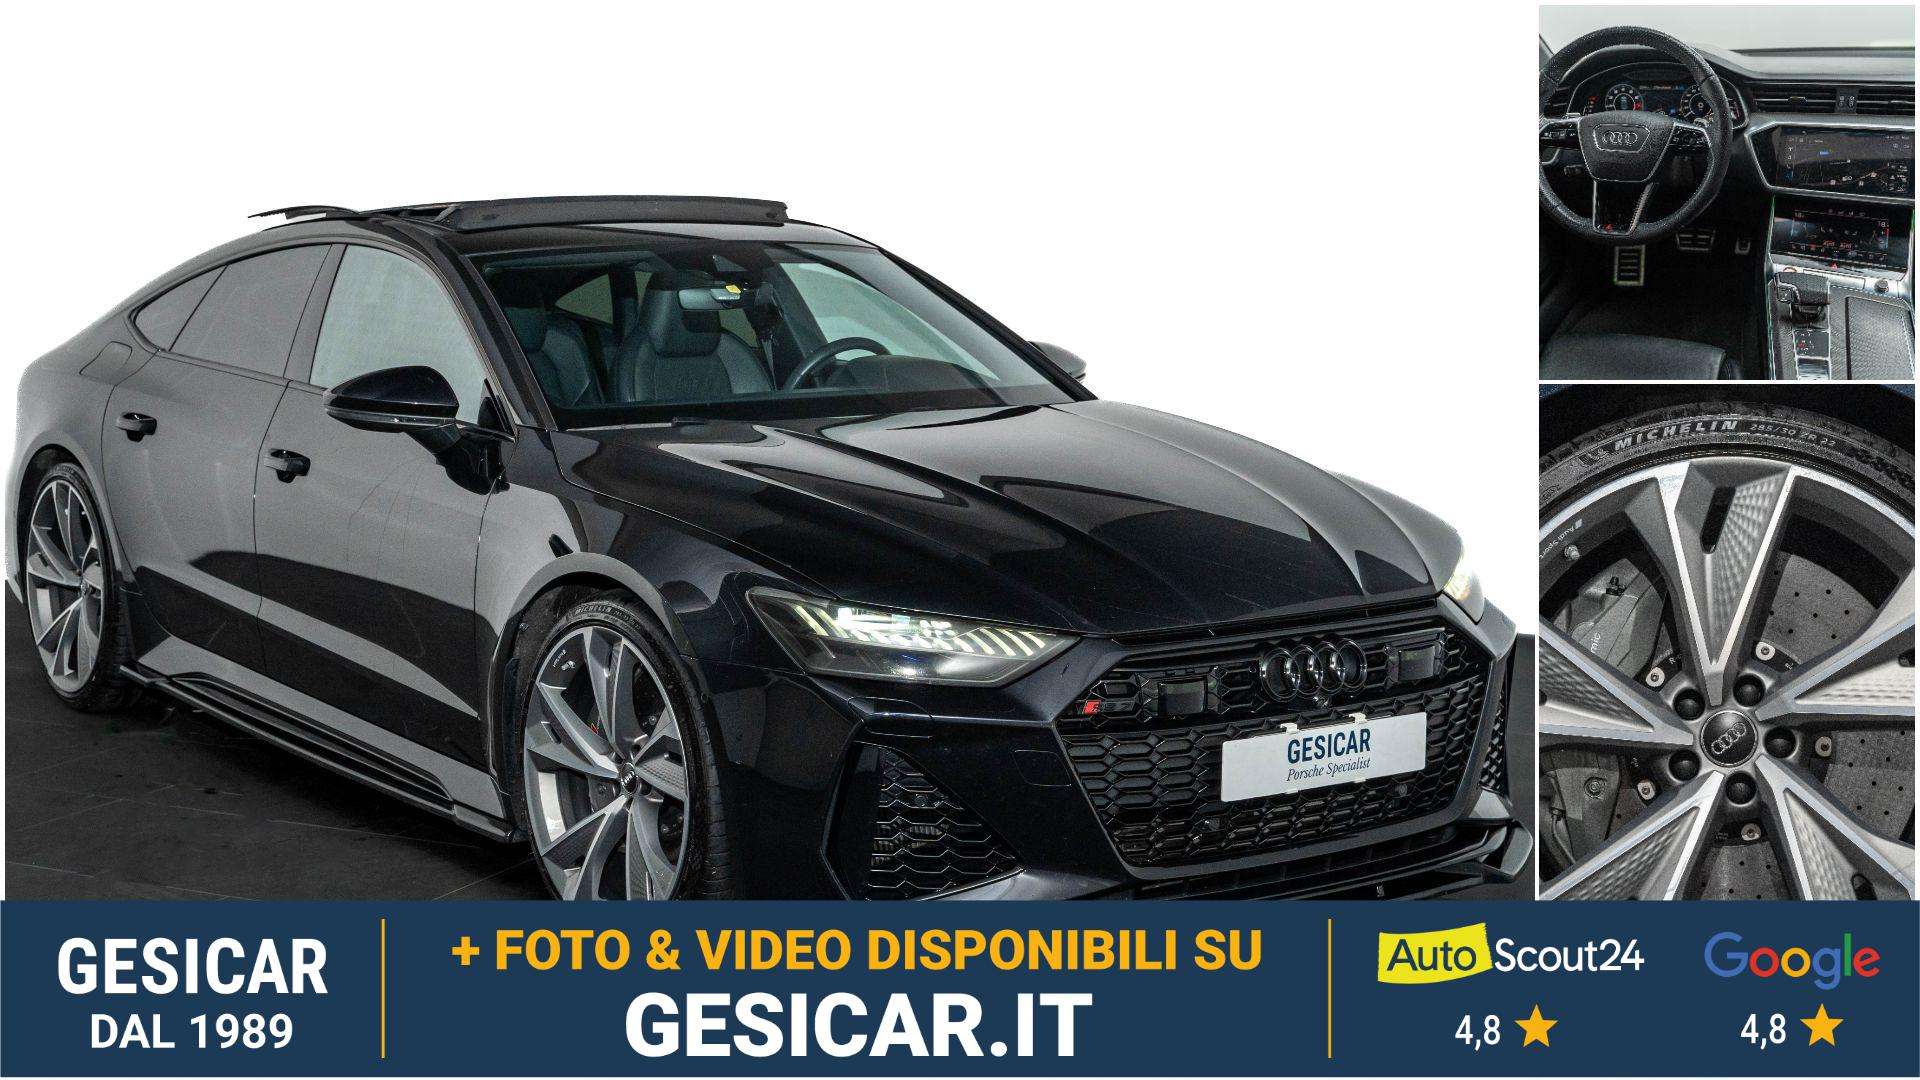 Audi RS7 Sedan in Black used in Livorno - Li for € 106,900.-